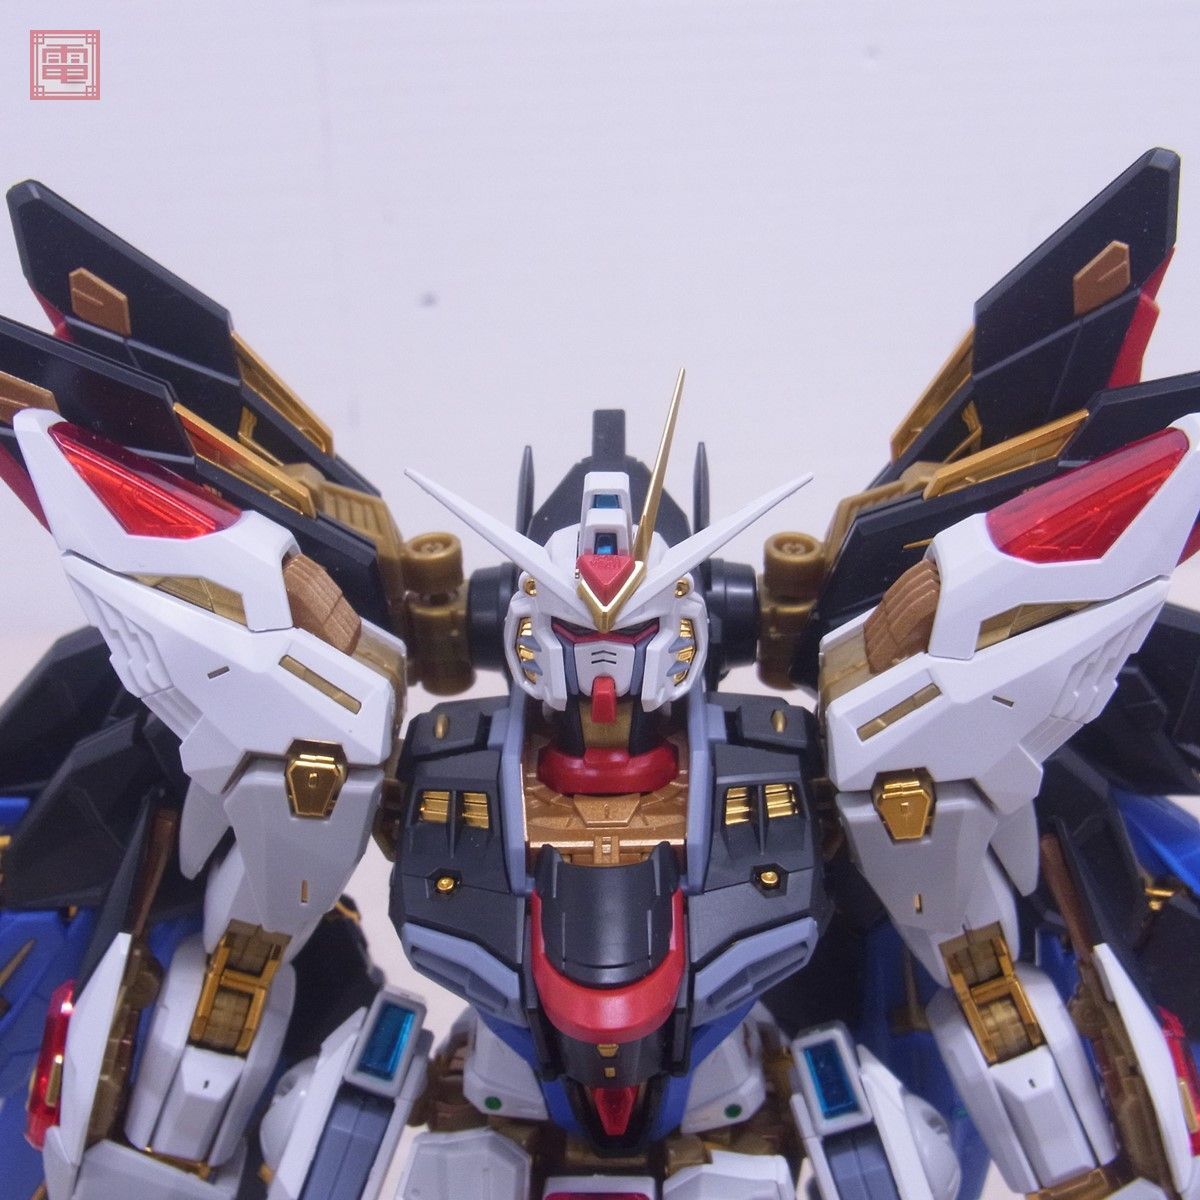  сборка settled Bandai MGEX 1/100 Strike freedom Gundam Mobile Suit Gundam SEED DESTINY BANDAI gun pra текущее состояние товар повреждение иметь [20